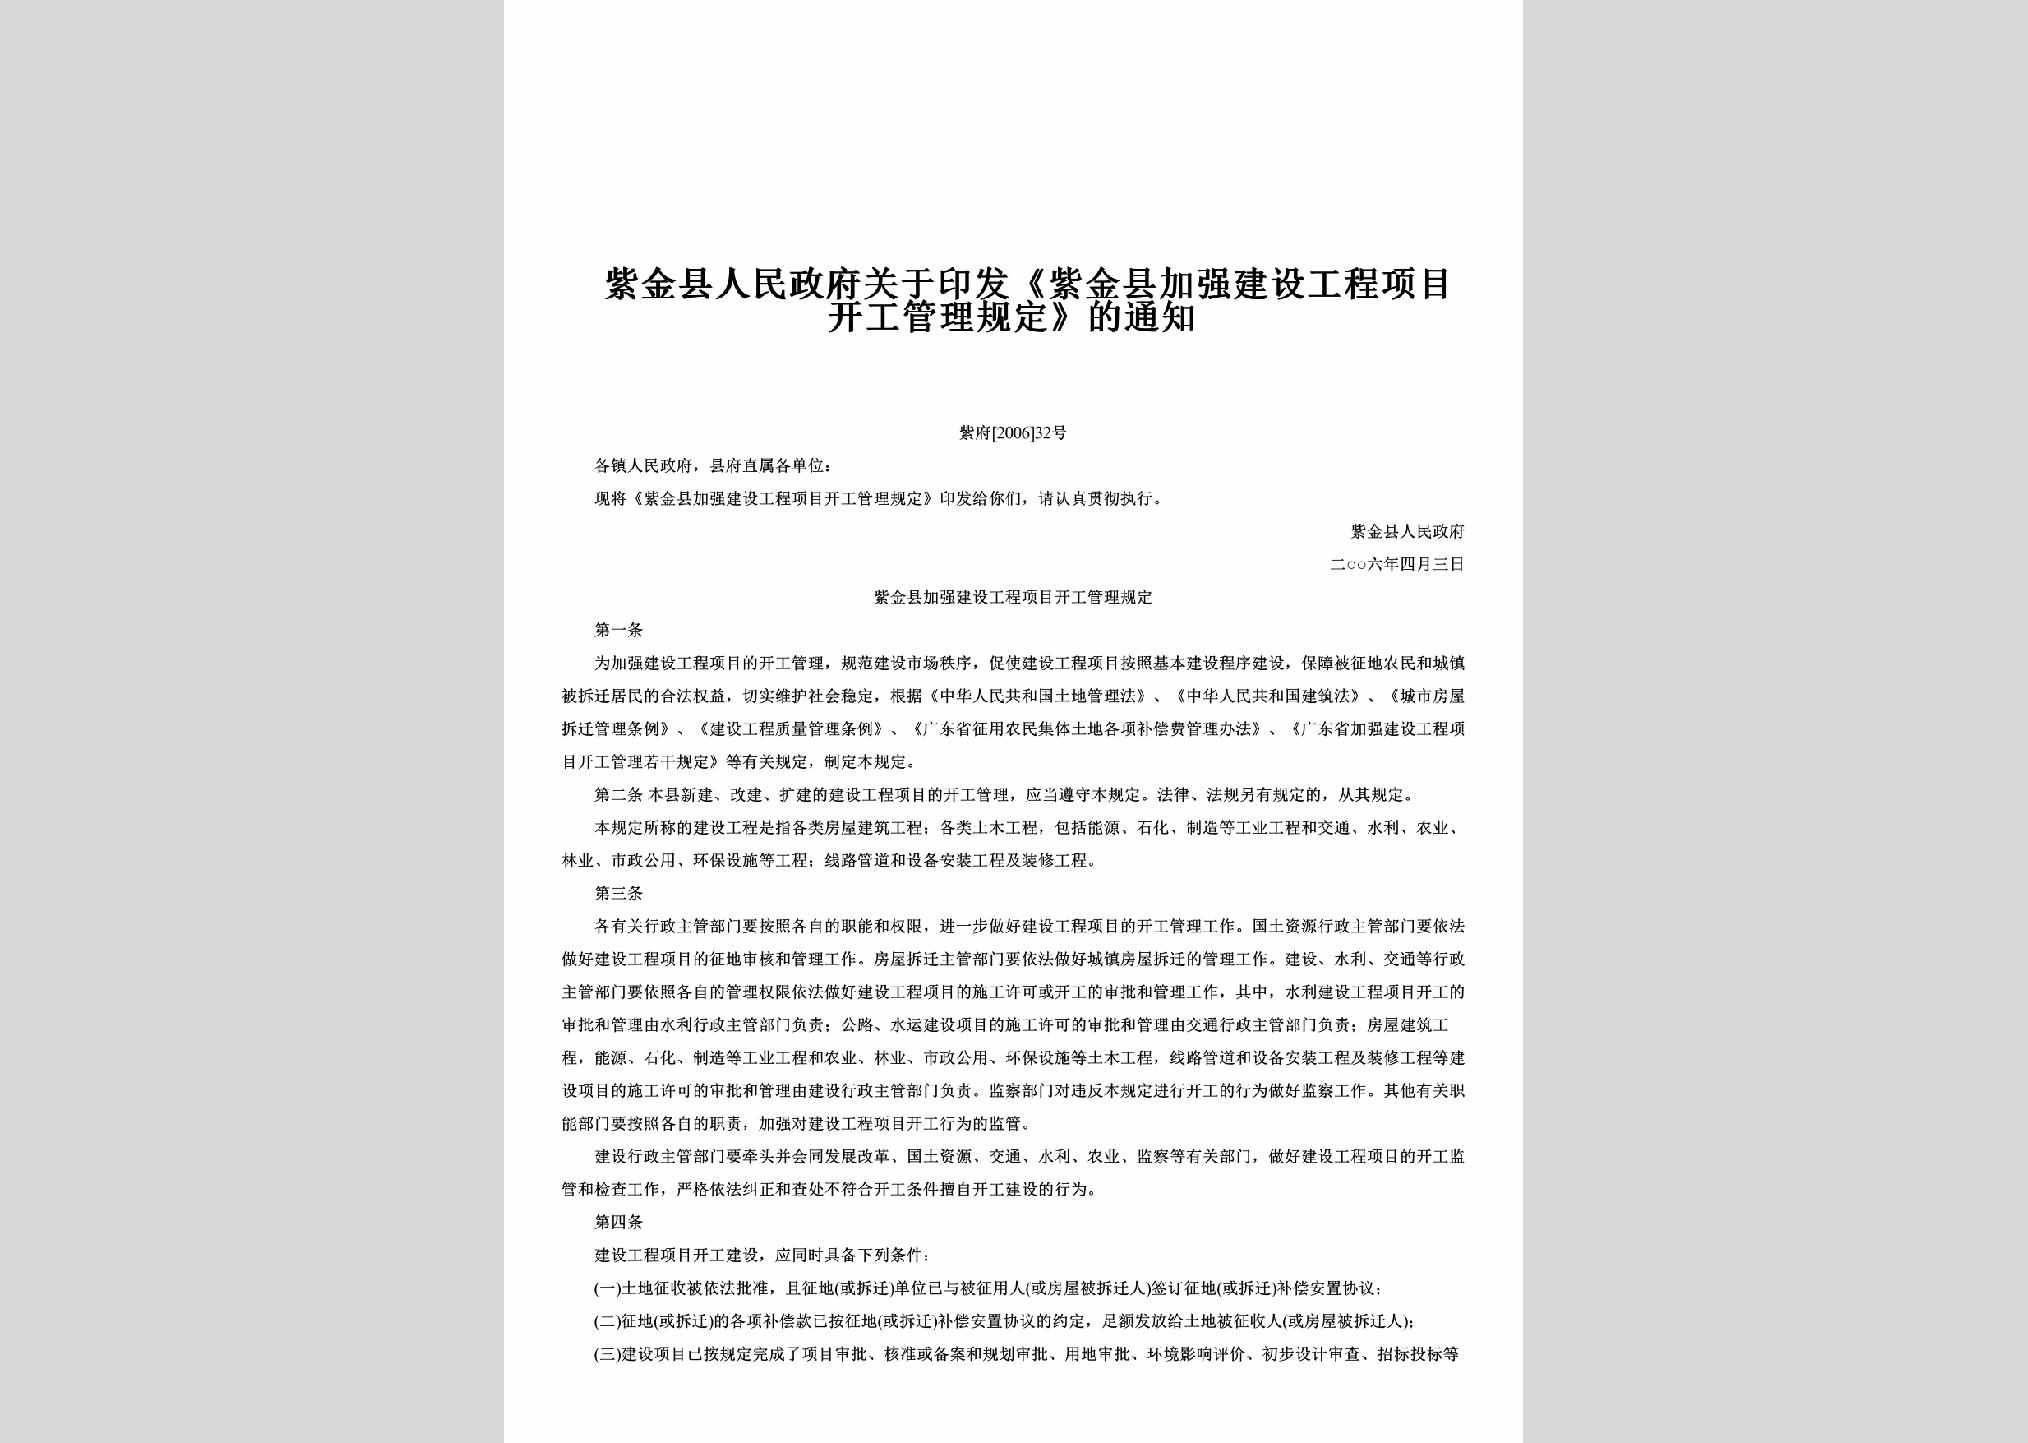 紫府[2006]32号：关于印发《紫金县加强建设工程项目开工管理规定》的通知